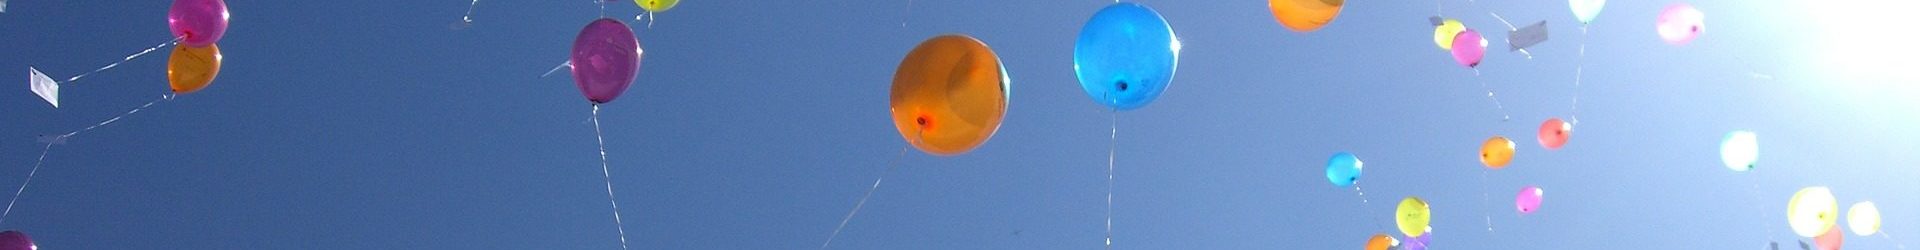 Luftballon bruchsal - Die besten Luftballon bruchsal unter die Lupe genommen